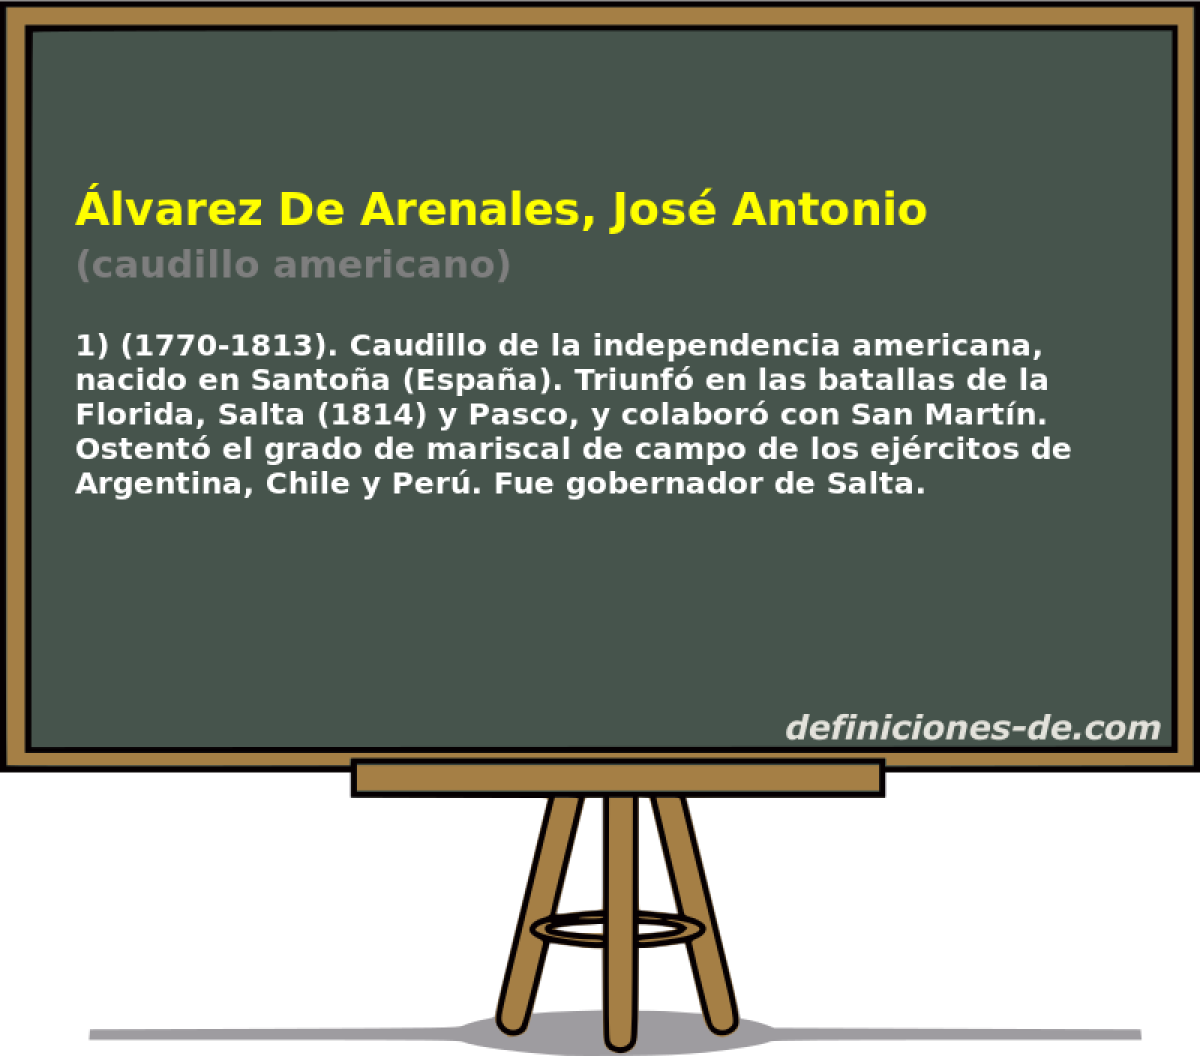 lvarez De Arenales, Jos Antonio (caudillo americano)